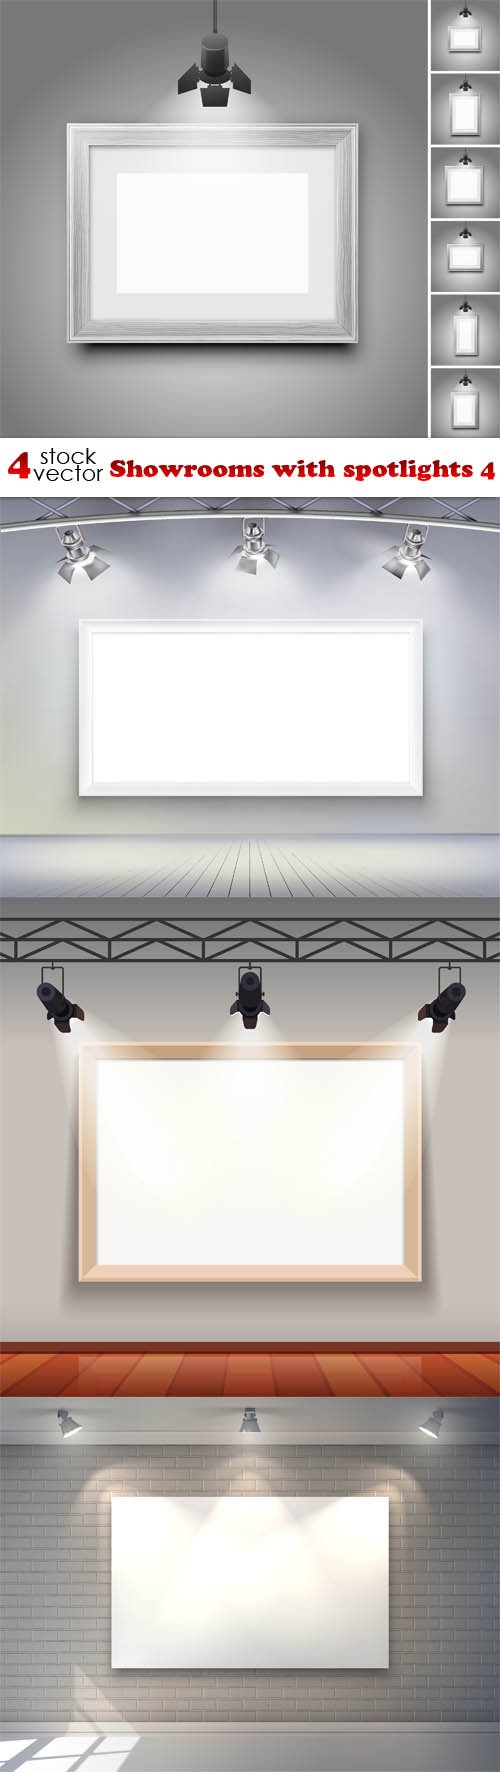 Vectors - Showrooms with spotlights 4